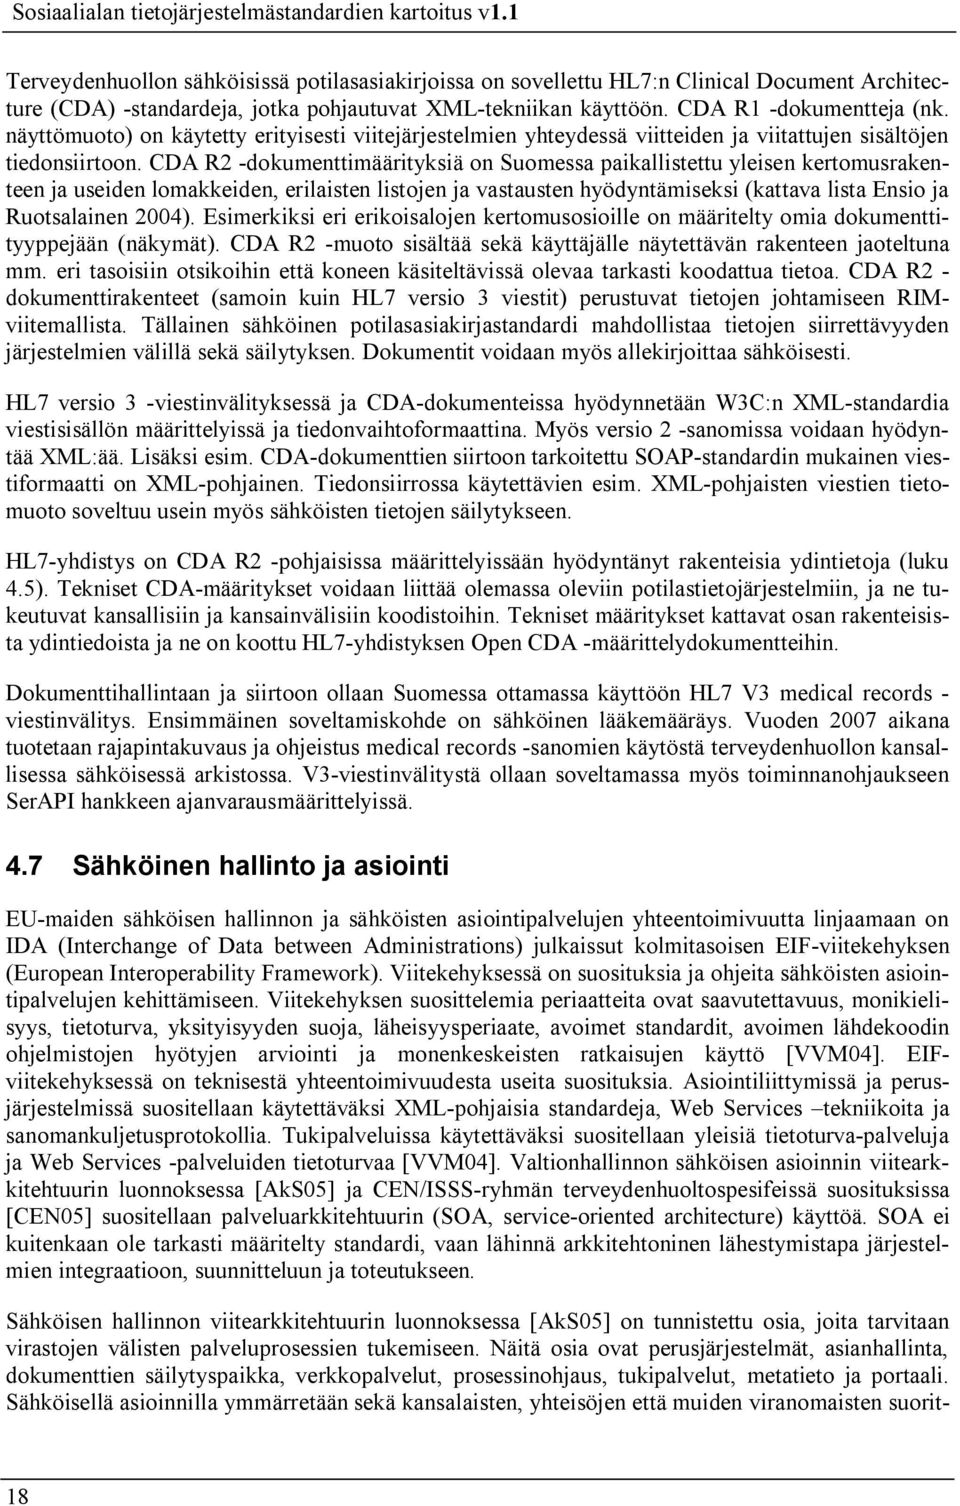 CDA R2 dokumenttimäärityksiä on Suomessa paikallistettu yleisen kertomusrakenteen ja useiden lomakkeiden, erilaisten listojen ja vastausten hyödyntämiseksi (kattava lista Ensio ja Ruotsalainen 2004).